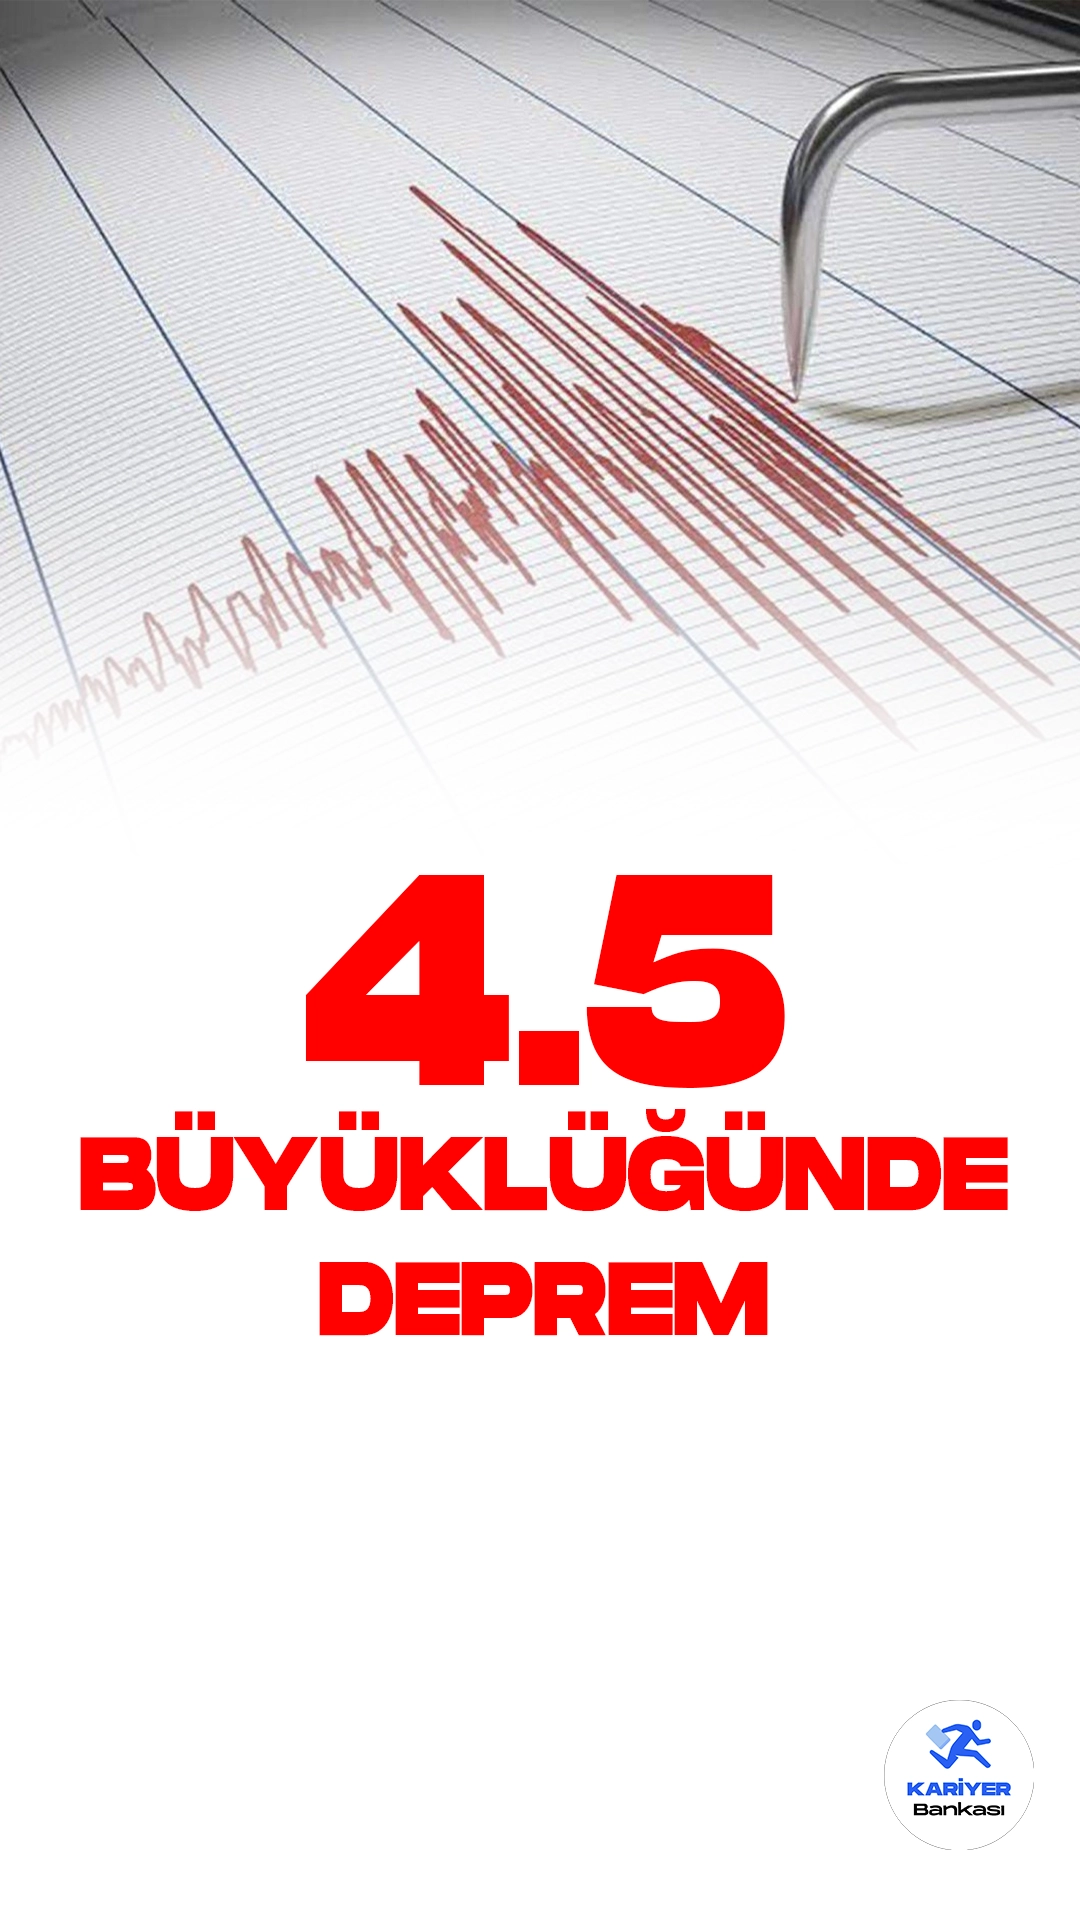 Antalya'da 4.5 Büyüklüğünde Deprem Oldu. İçişleri Bakanlığı Afet ve Acil Durum Yönetimi Başkanlığı (AFAD) resmi sayfasından yayımlanan son dakika bilgisine göre, Antalya'nın Gazipaşa ilçesinde 4.5 büyüklüğünde deprem meydana geldiği aktarıldı.